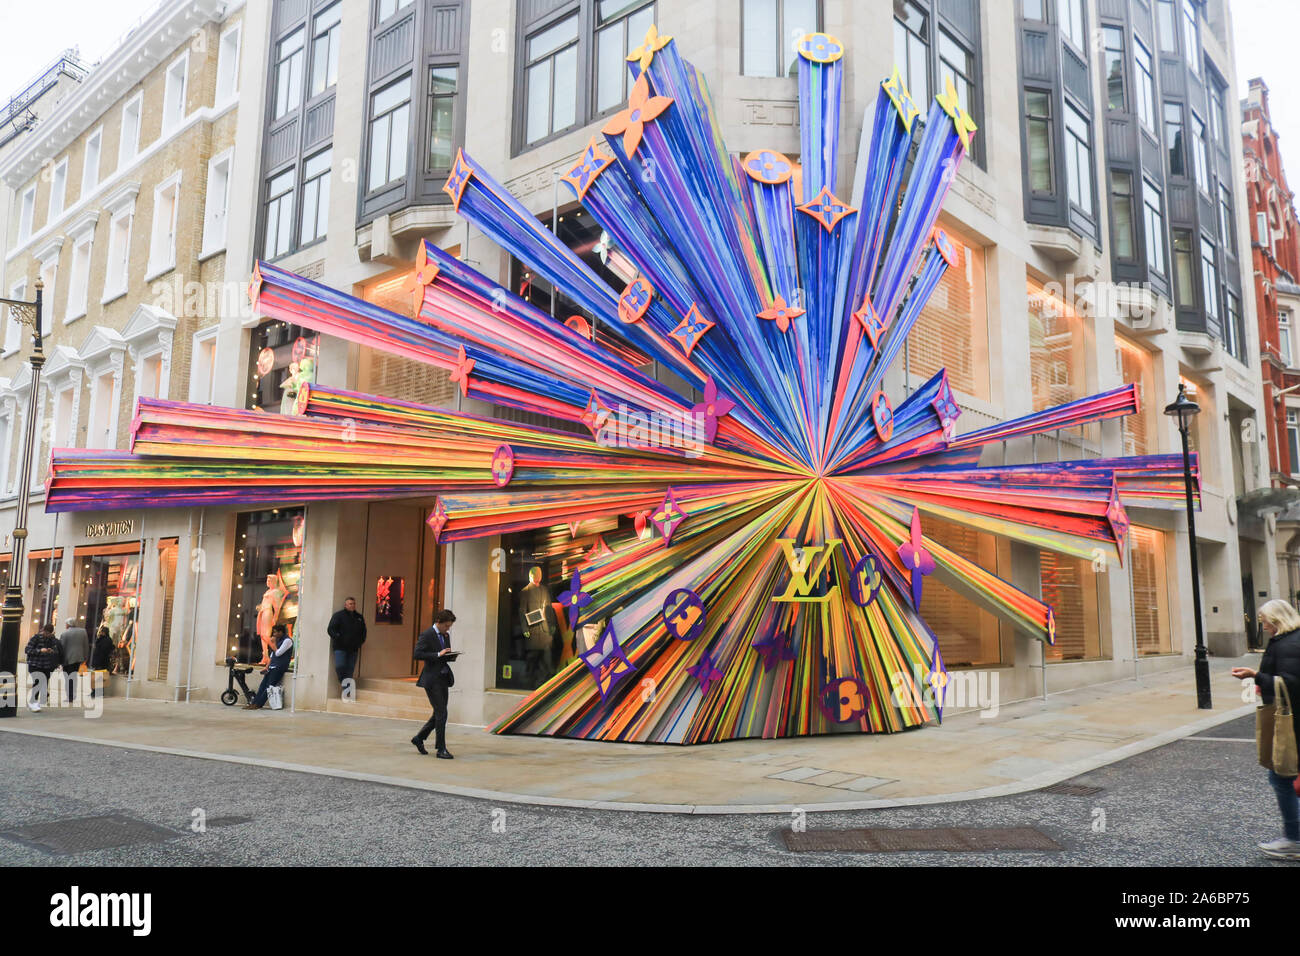 Louis Vuitton London Bond Street Store Exterior - Picture of Louis